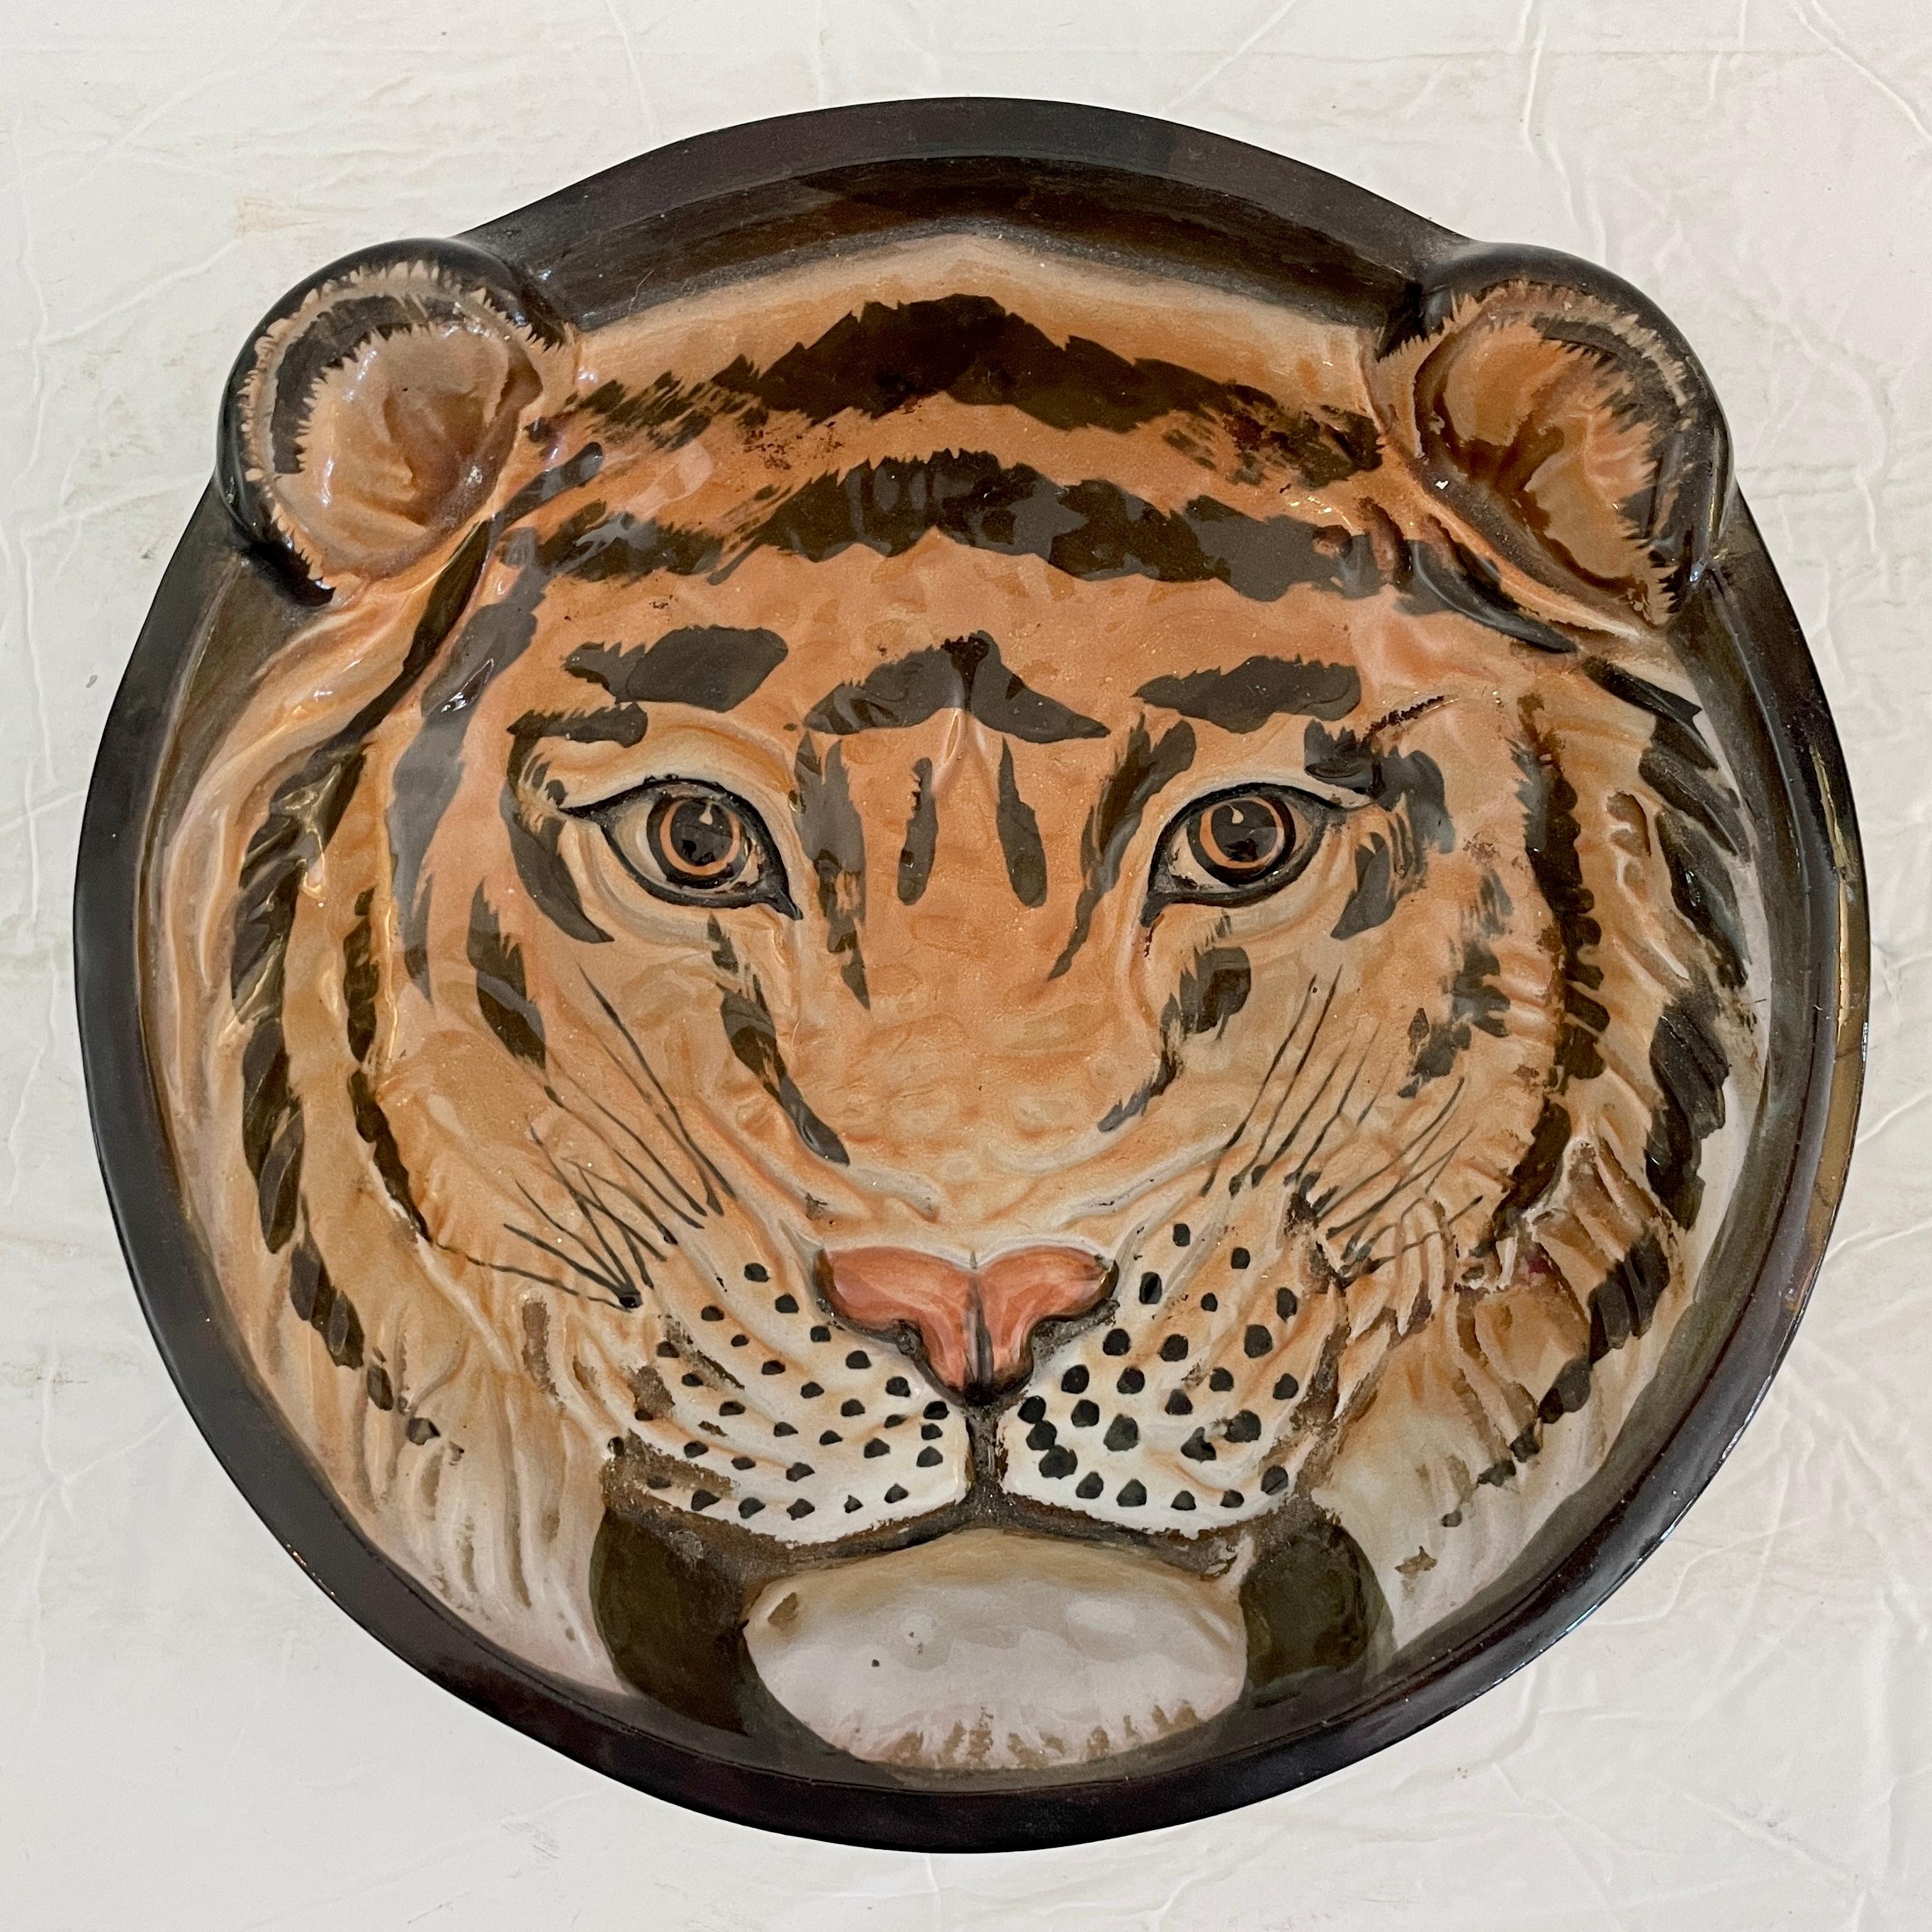 Fun Keramik Boho Chic Servierschale eines Tigers Gesicht malen und Motive. Eine tolle Ergänzung für Ihre Bar und Ihre Partys. Dies ist ein Teil einer Serie von 4 Tierschalen, finden Sie sie auf unsere Angebote und sammeln sie alle!